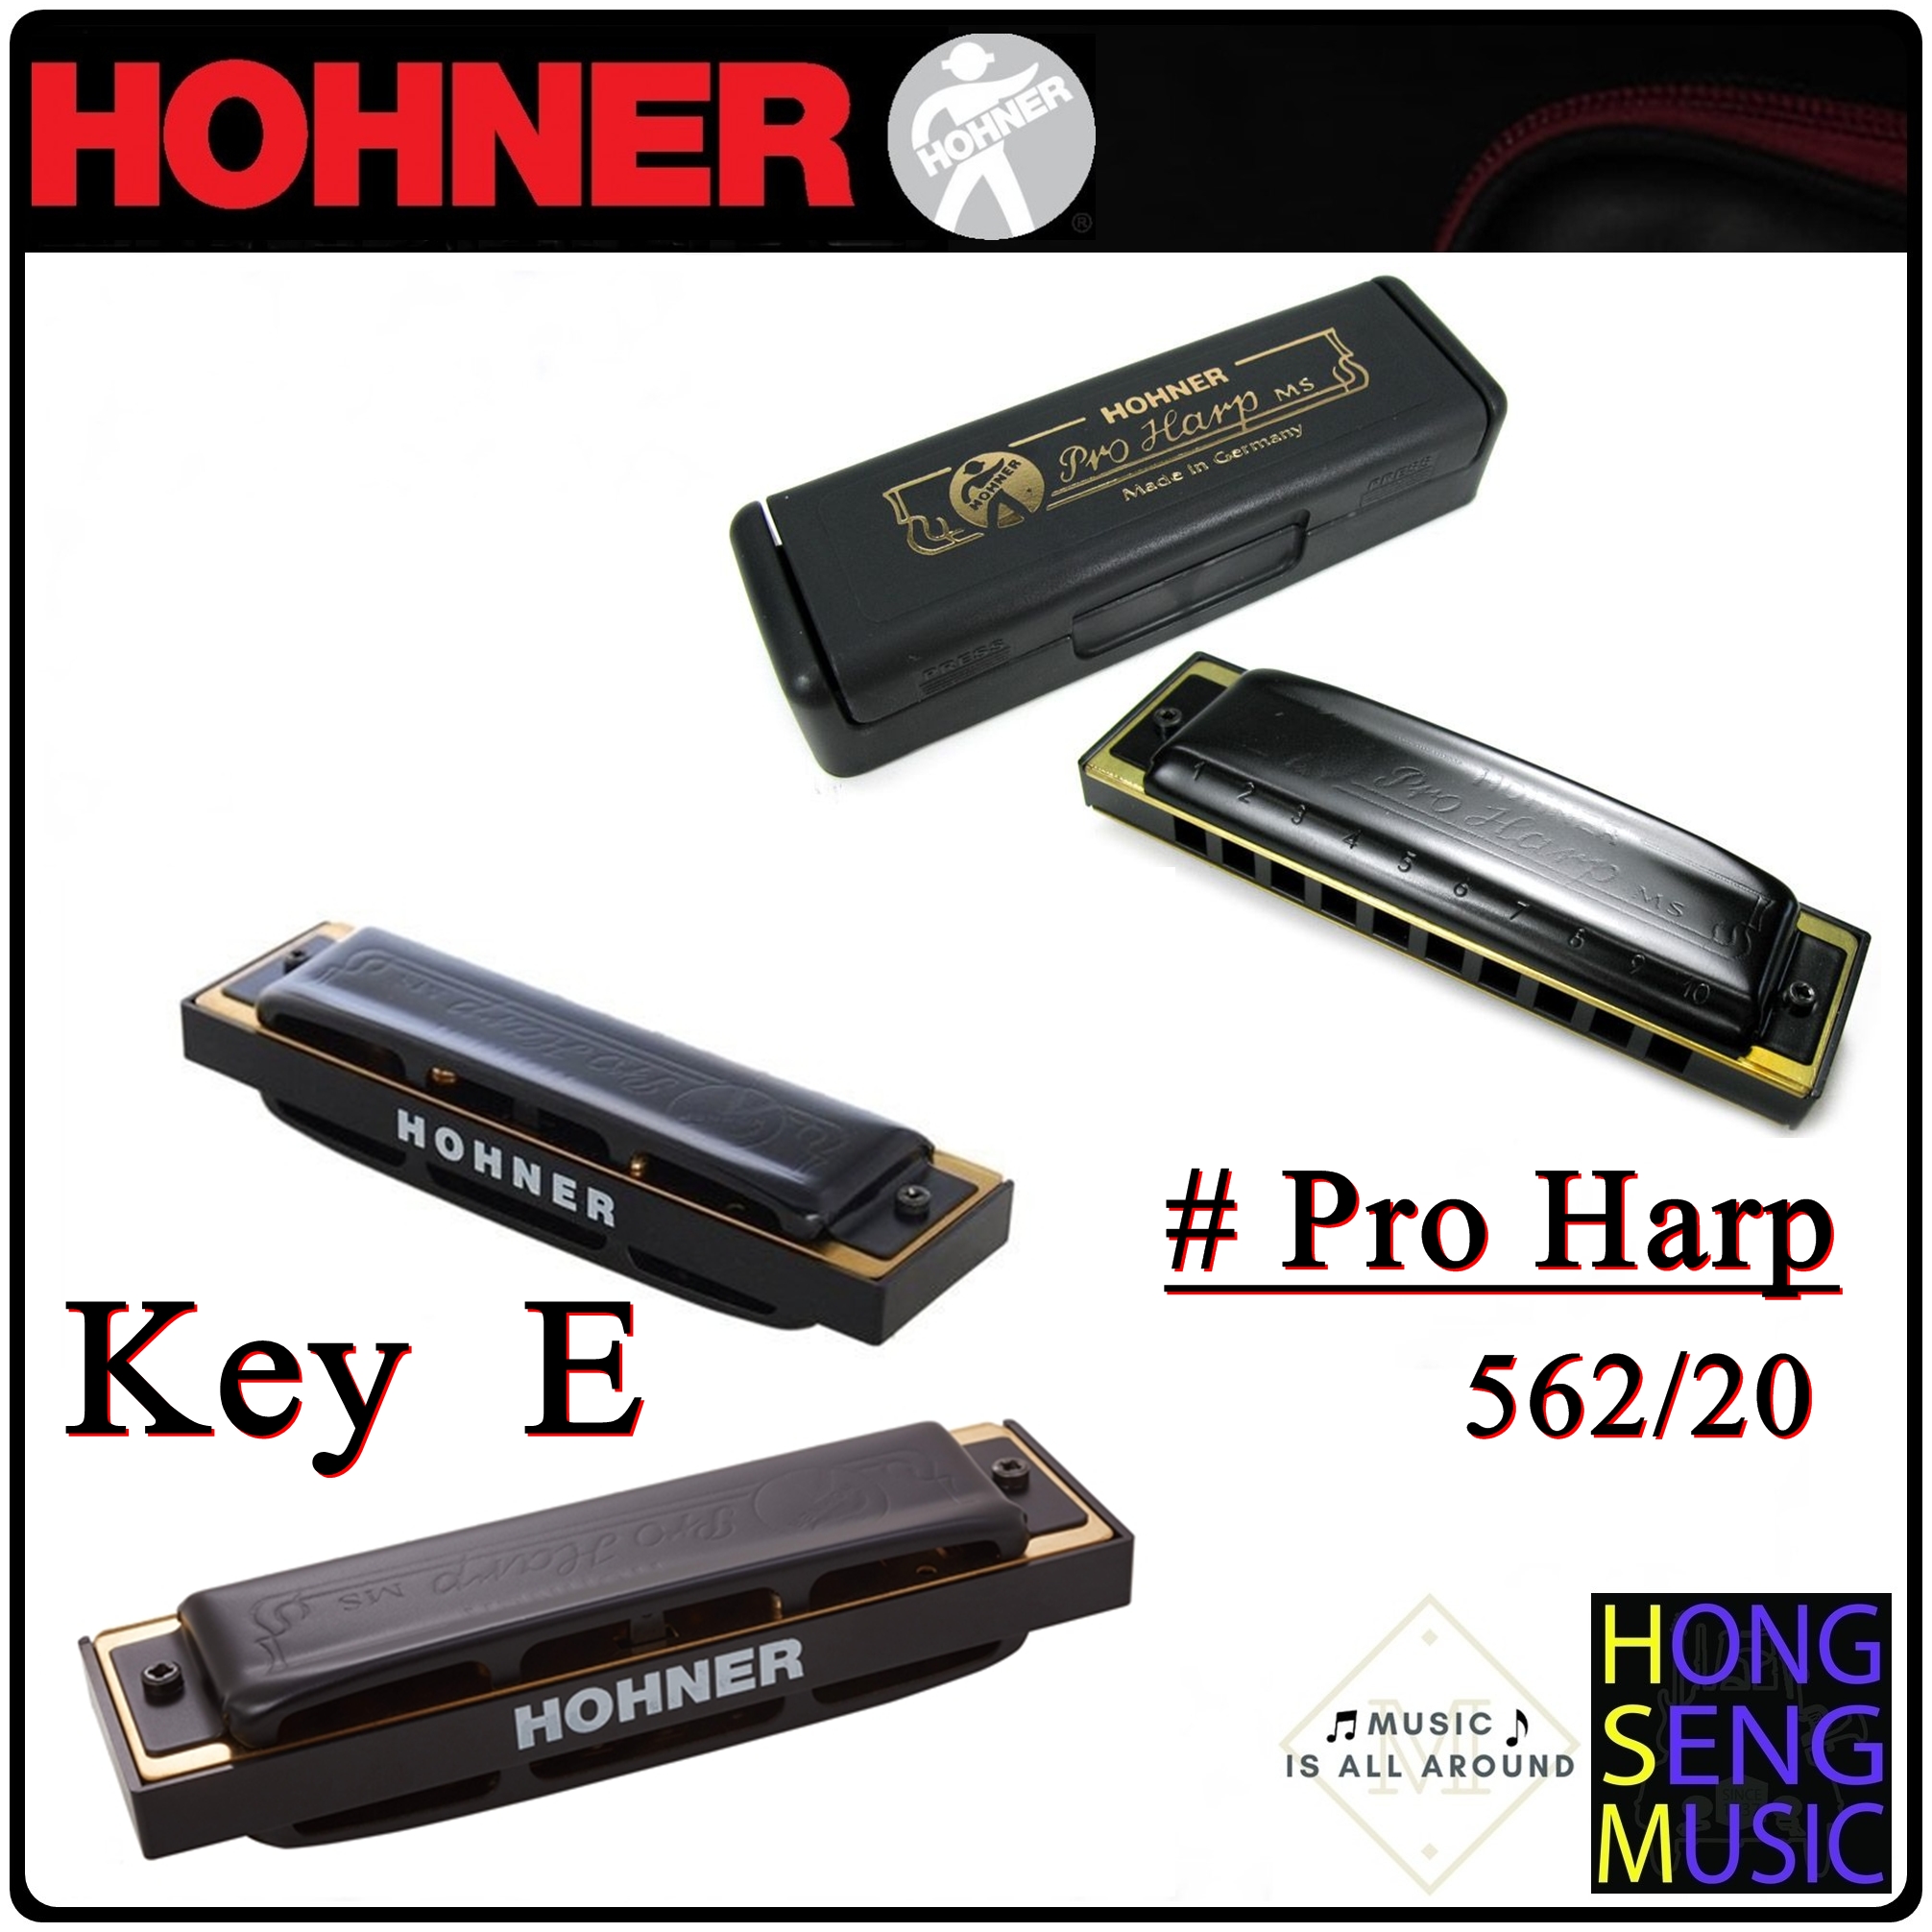 ฮาร์โมนิก้า (เม้าท์ออร์แกน) Hohner รุ่น Pro Harp Harmonica 562/20 Key E